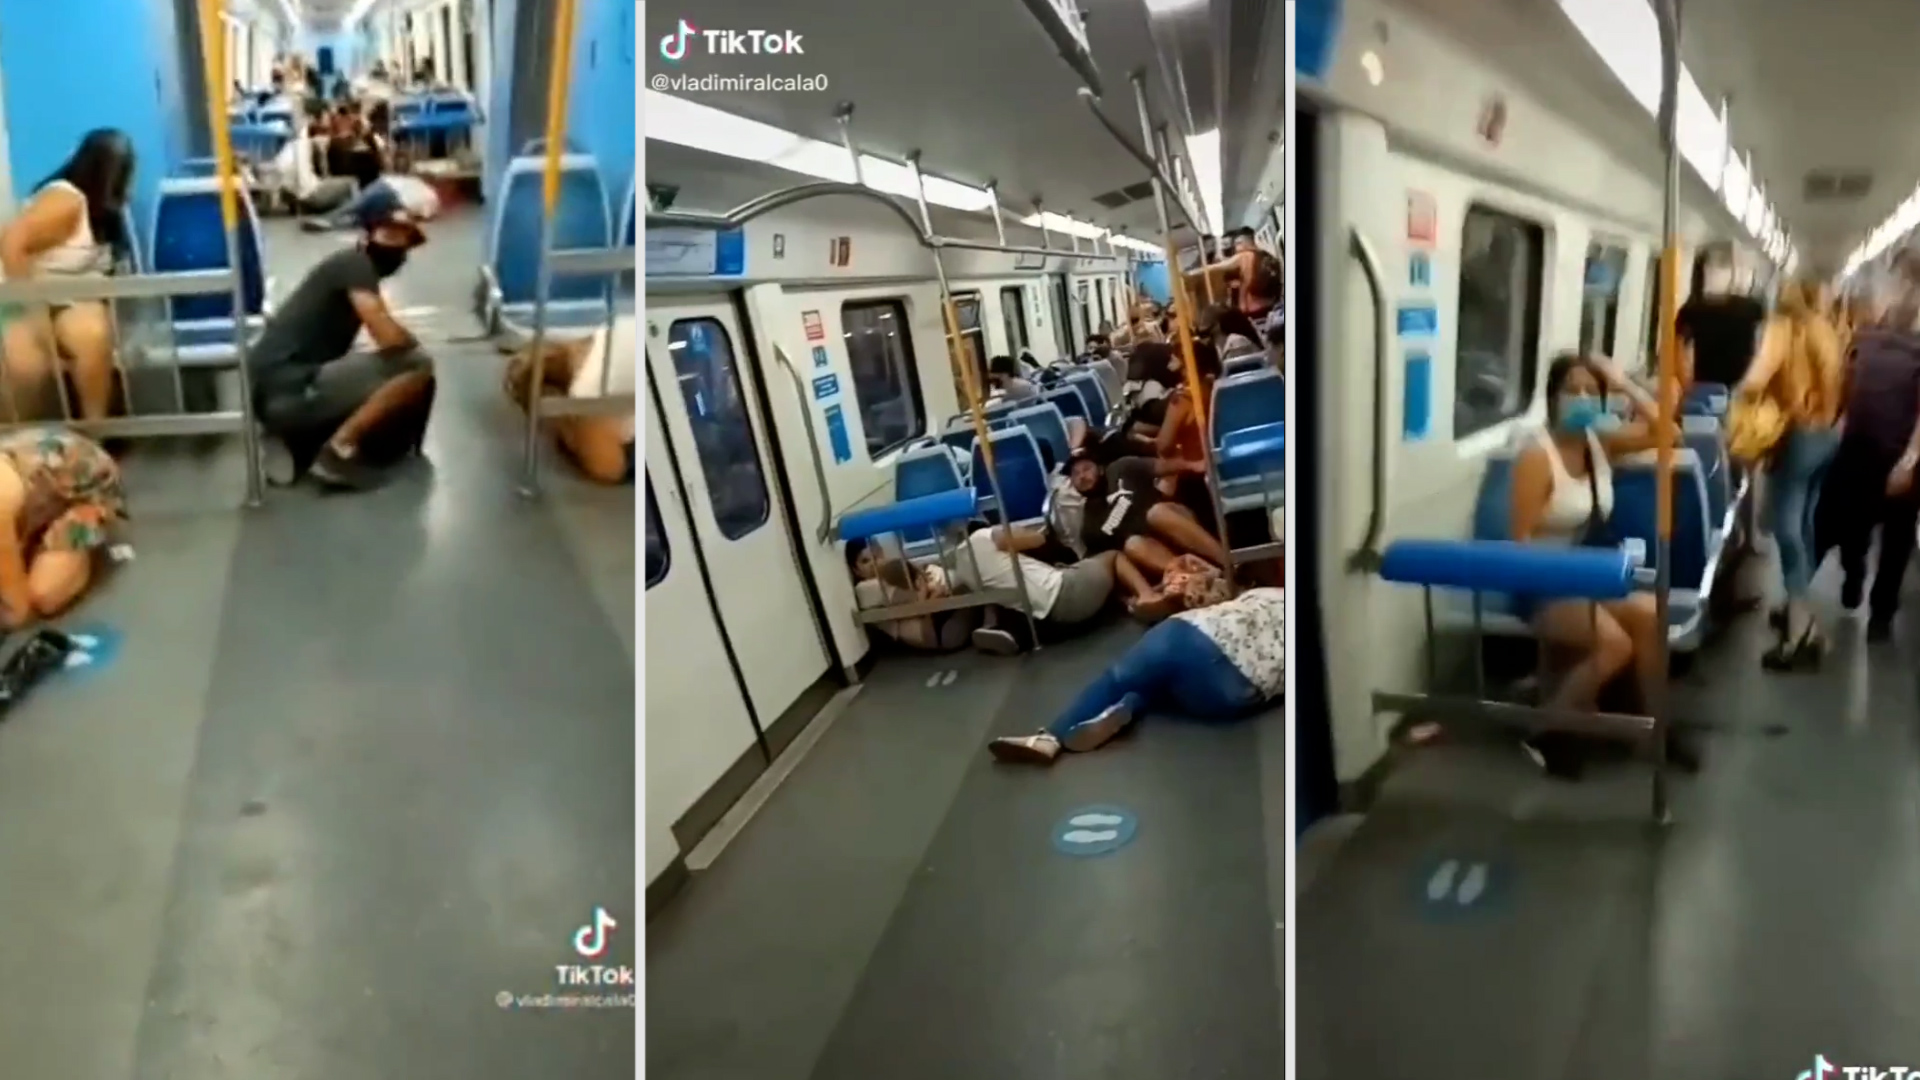 "Están disparando en el tren": las imágenes del pánico se viralizaron a través de Tik Tok